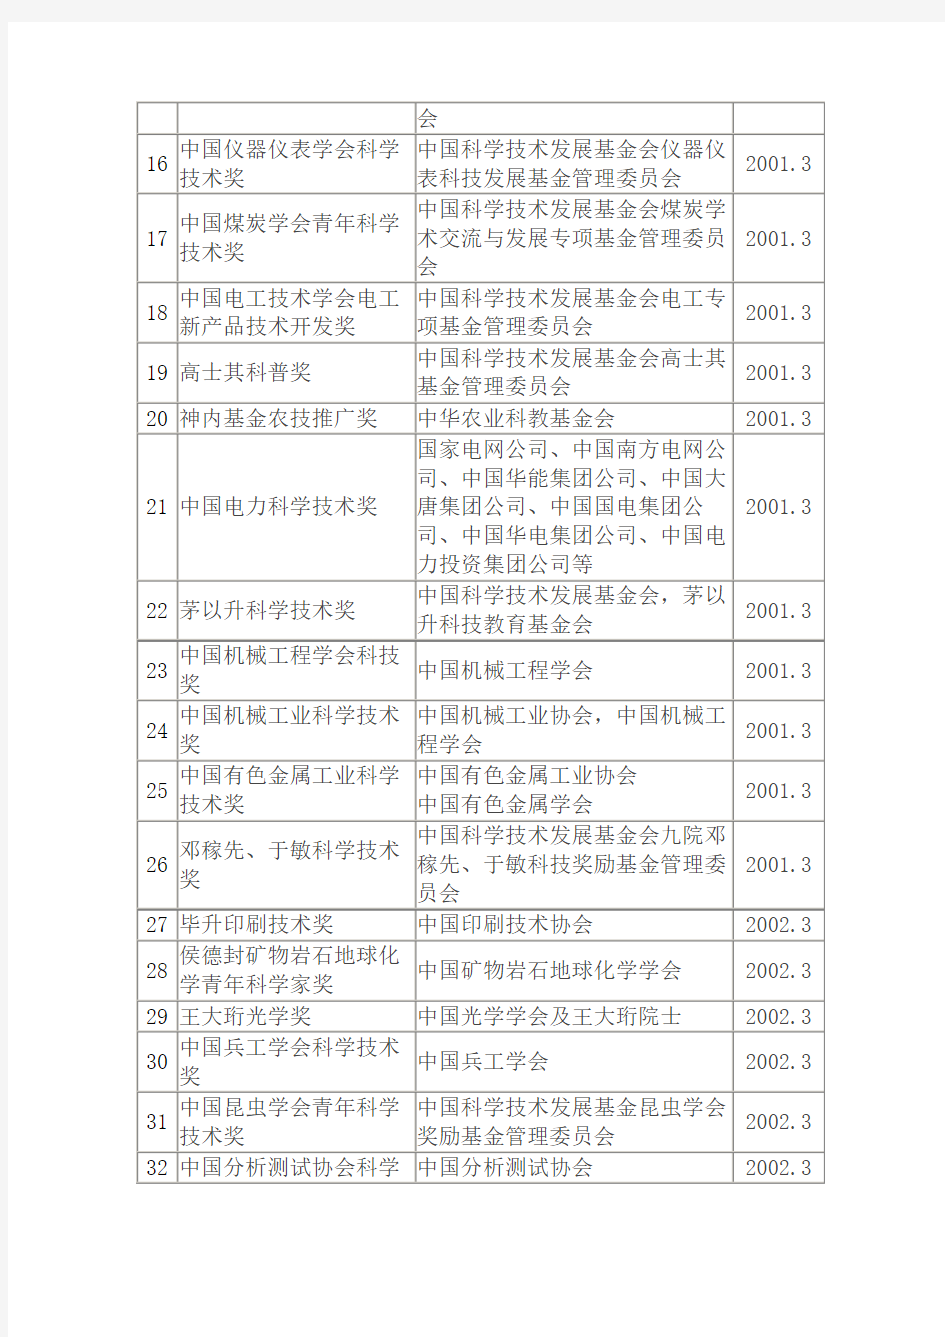 中华人民共和国科学技术部审批的社会力量设立科学技术奖项的名单